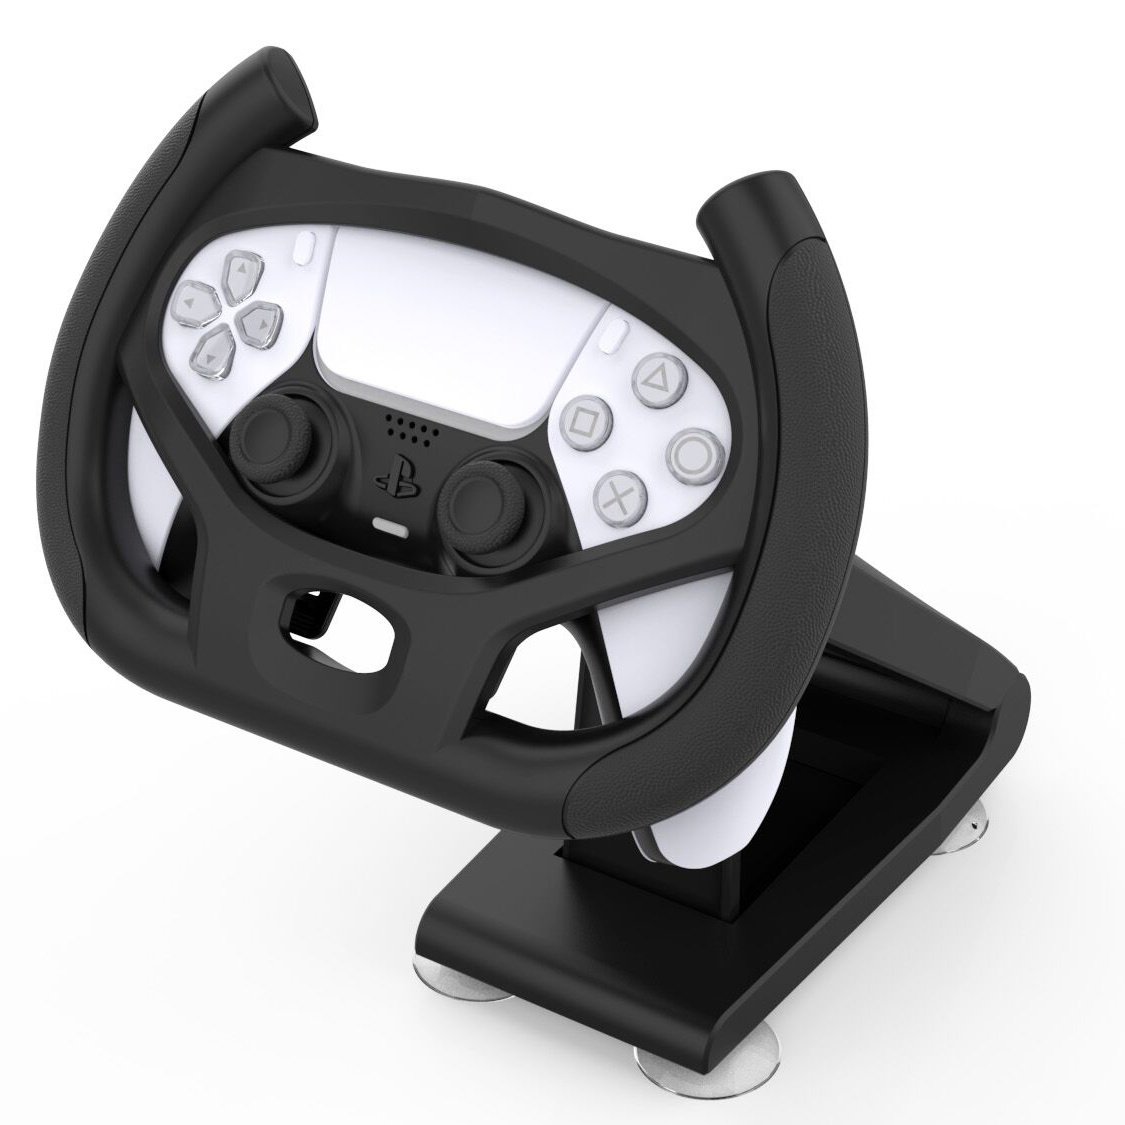 https://cdn.webshopapp.com/shops/38765/files/343855821/geeek-gaming-racing-steering-wheel-ps5-controller.jpg